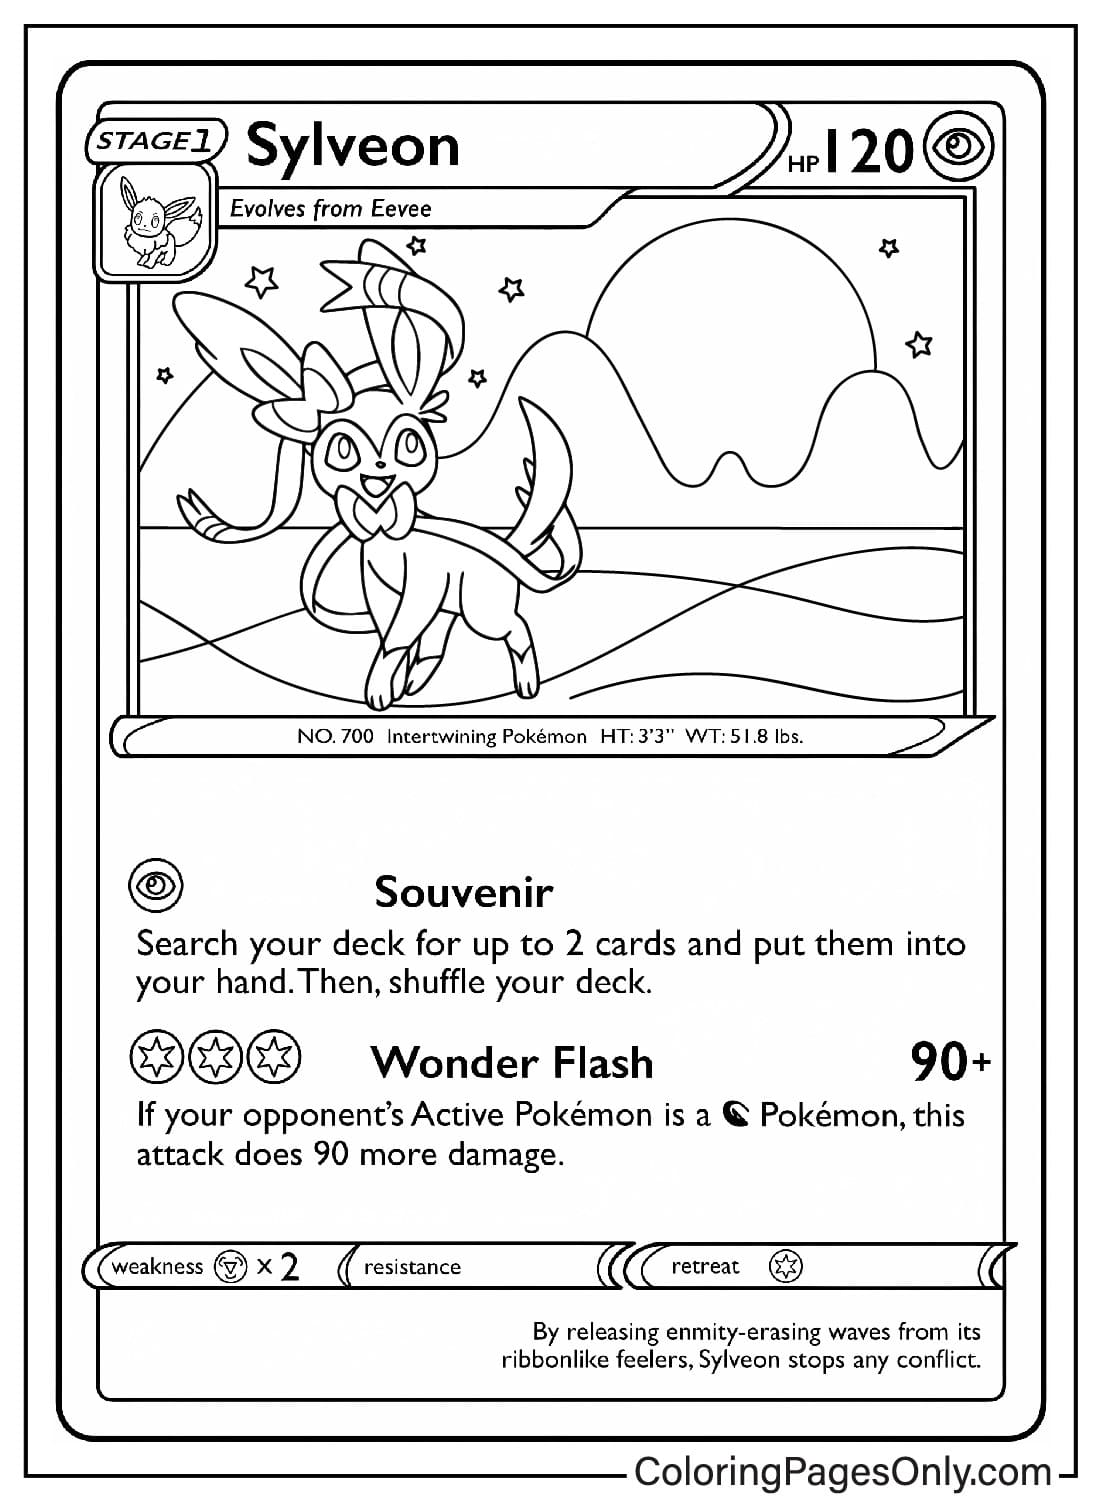 Sylveon Pokemon Card Coloring Sheet from Pokemon Card